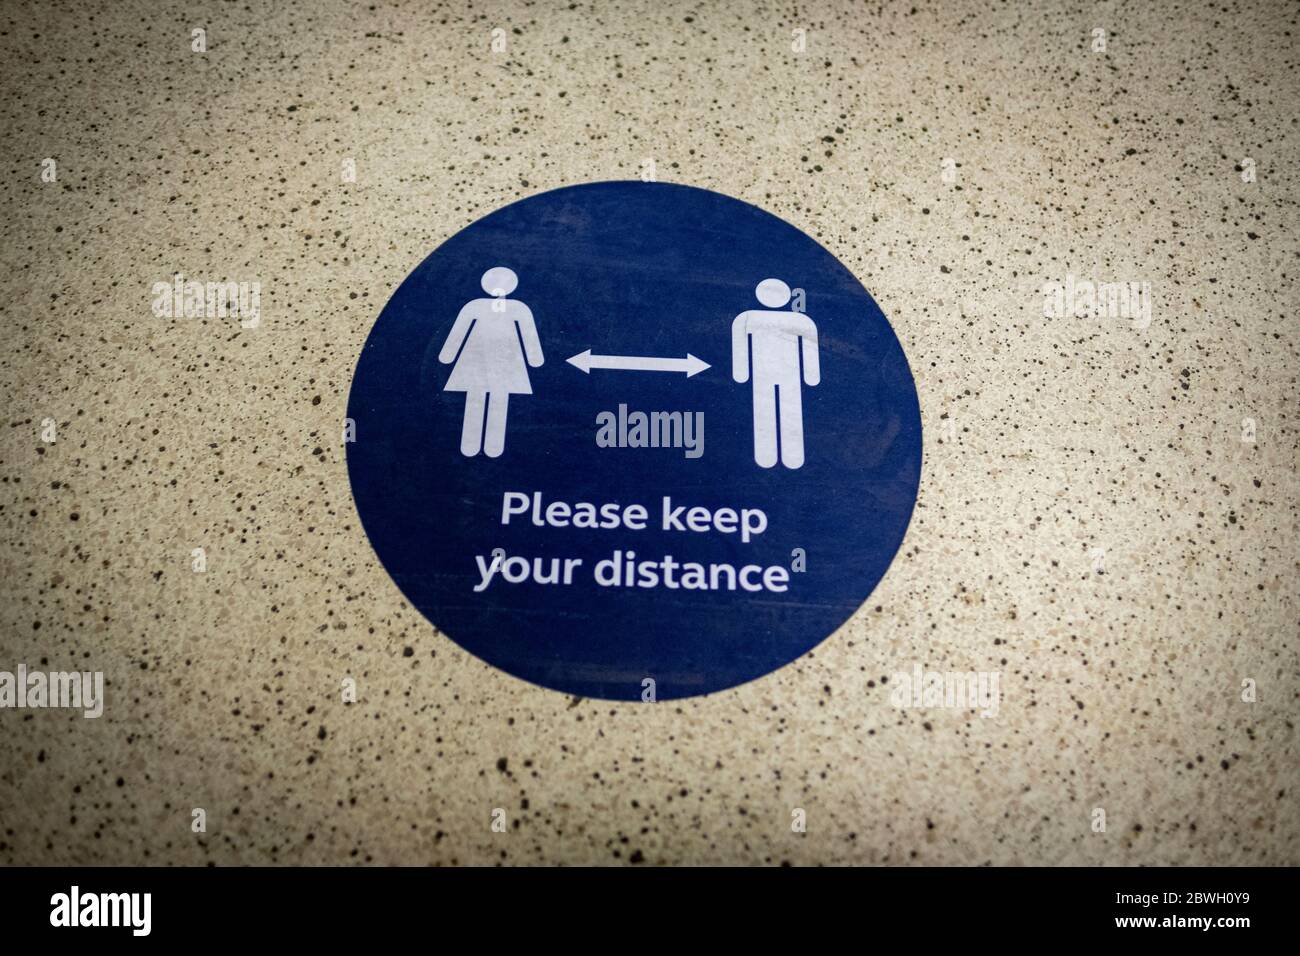 Victoria Station- London, Juni 2020: Halten Sie Ihre Entfernung öffentlichen Informationen Aufkleber re Covid 19 sozialen Distanzierung Stockfoto